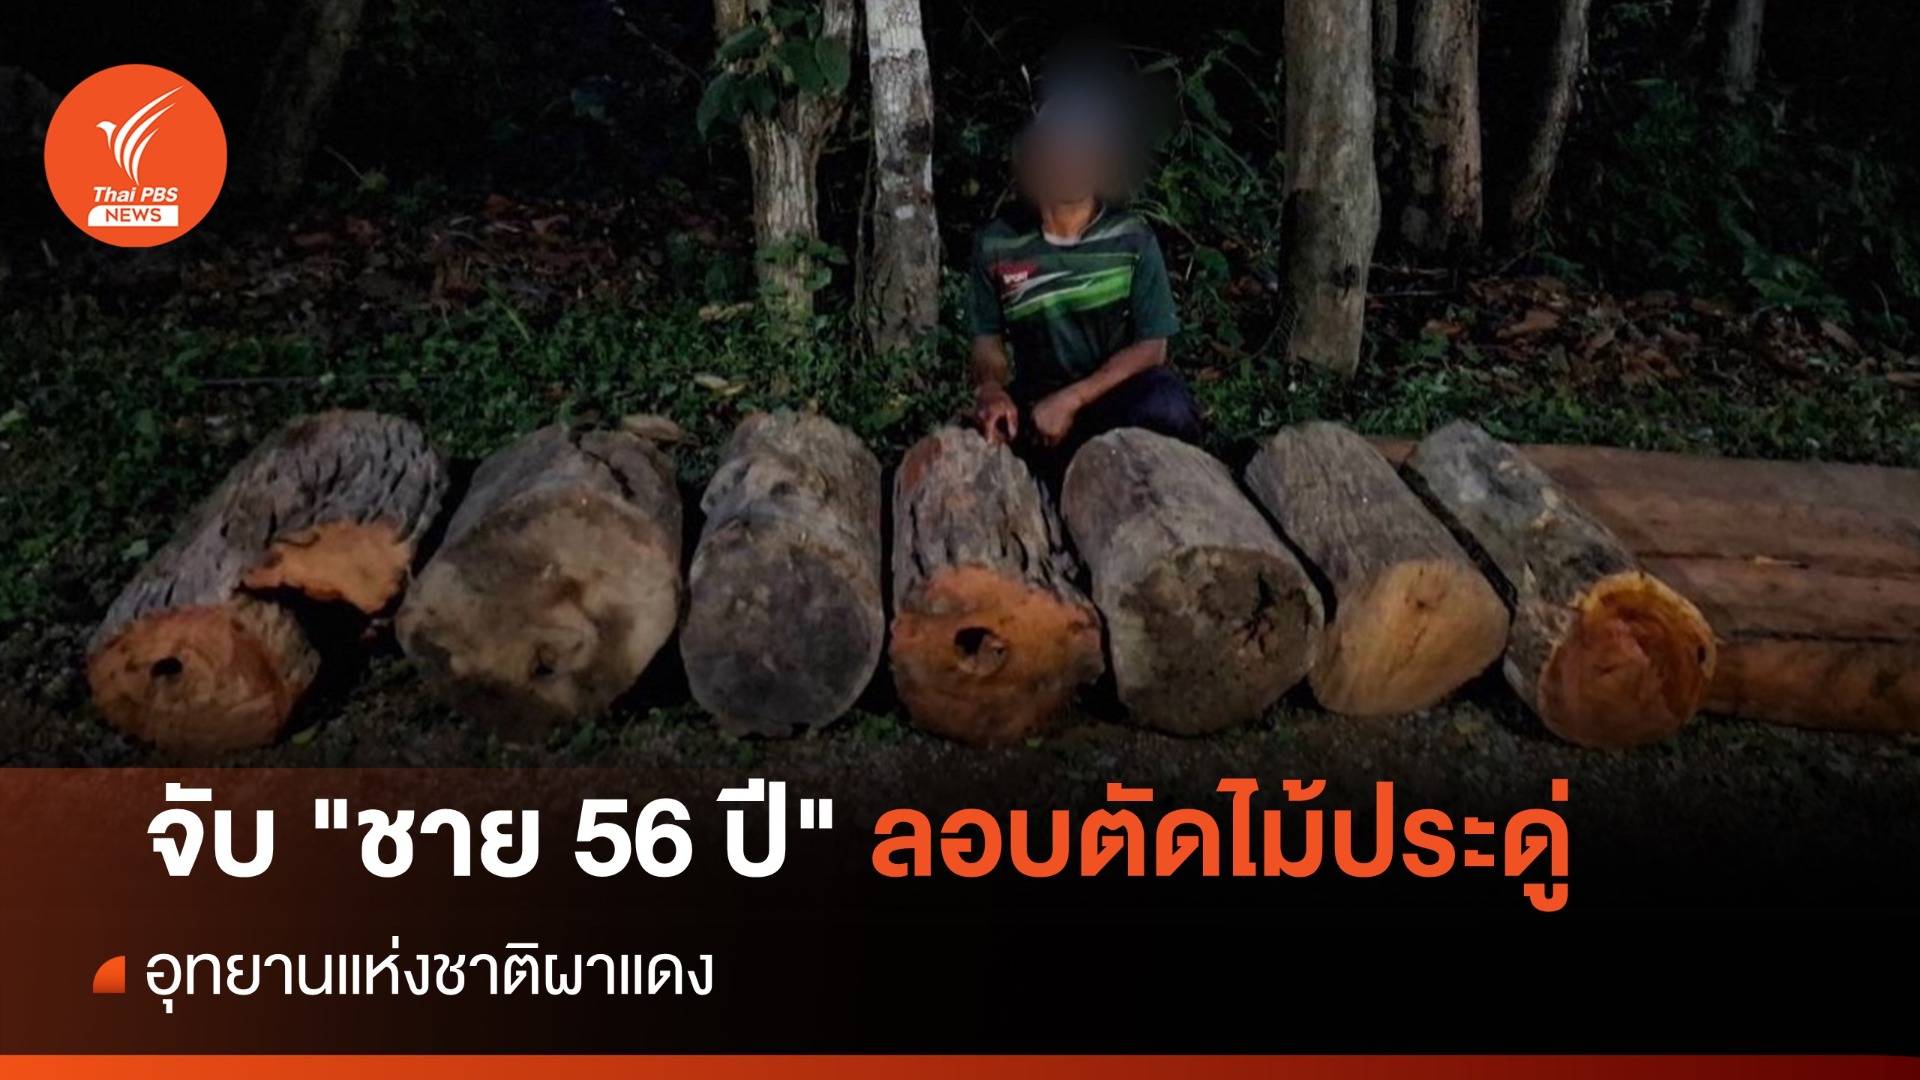 บุกจับ "ชาย 56 ปี" ลอบตัดไม้ประดู่อุทยานฯ ผาแดง